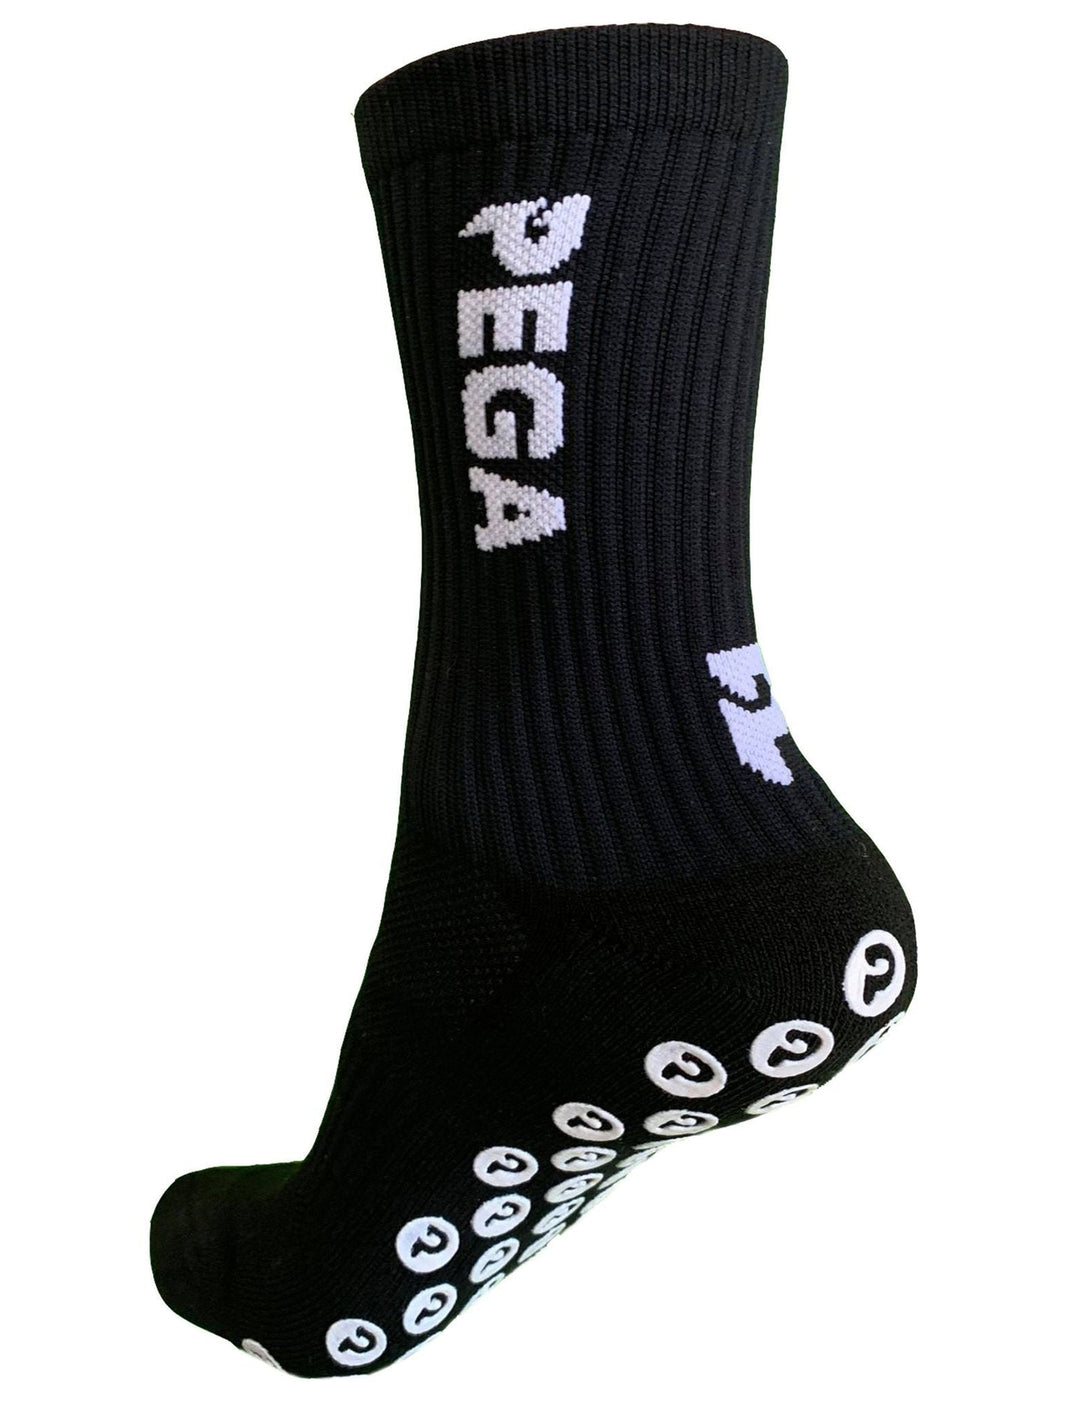 GIOCA Grip Socks – Brisbane City Football Club